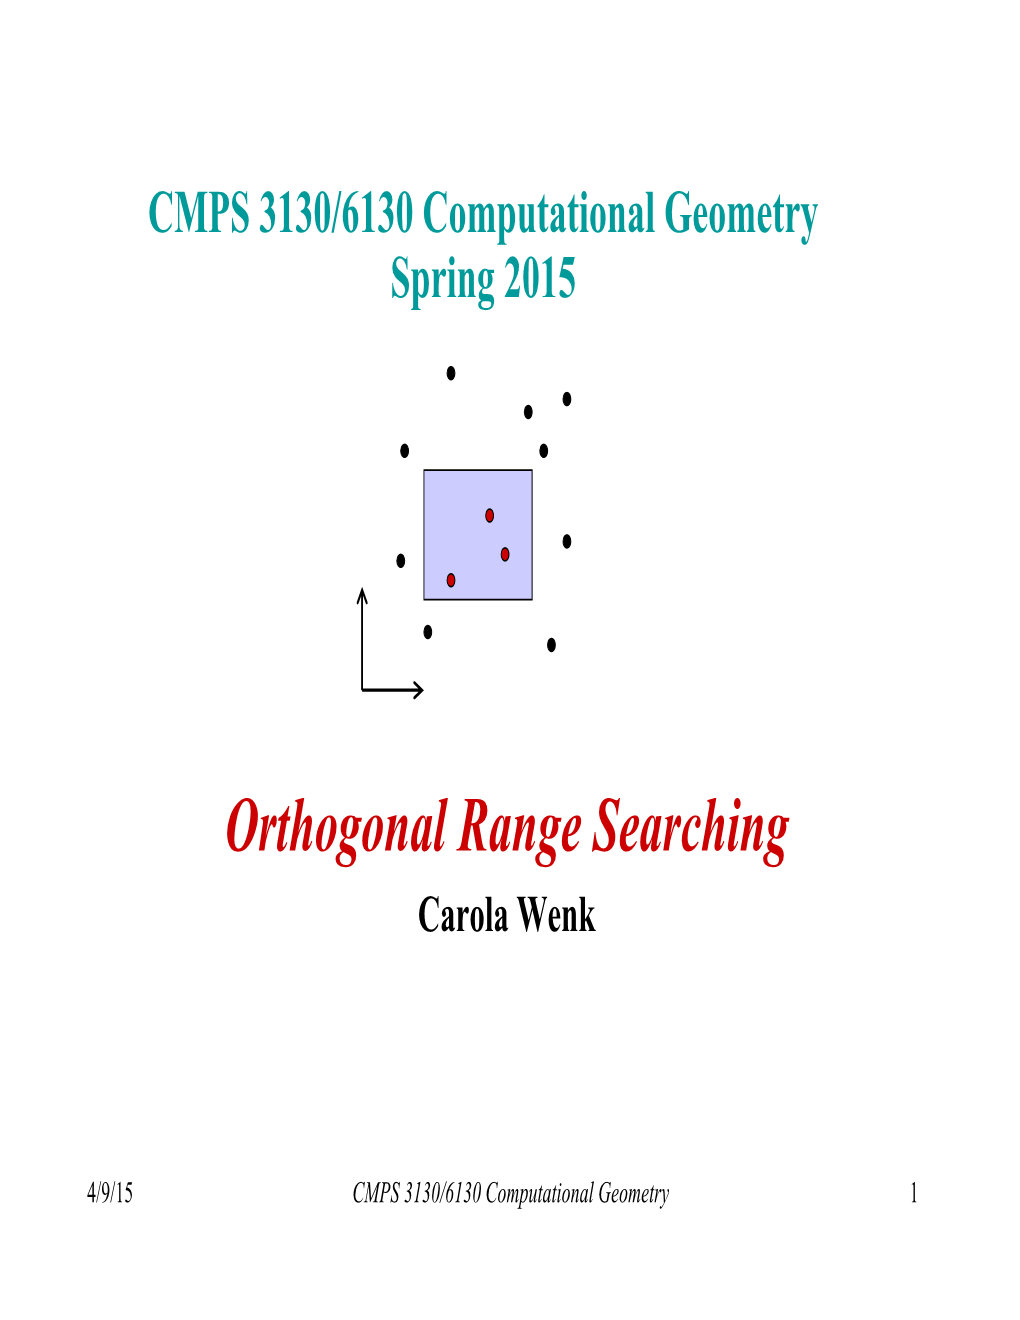 Orthogonal Range Searching Carola Wenk